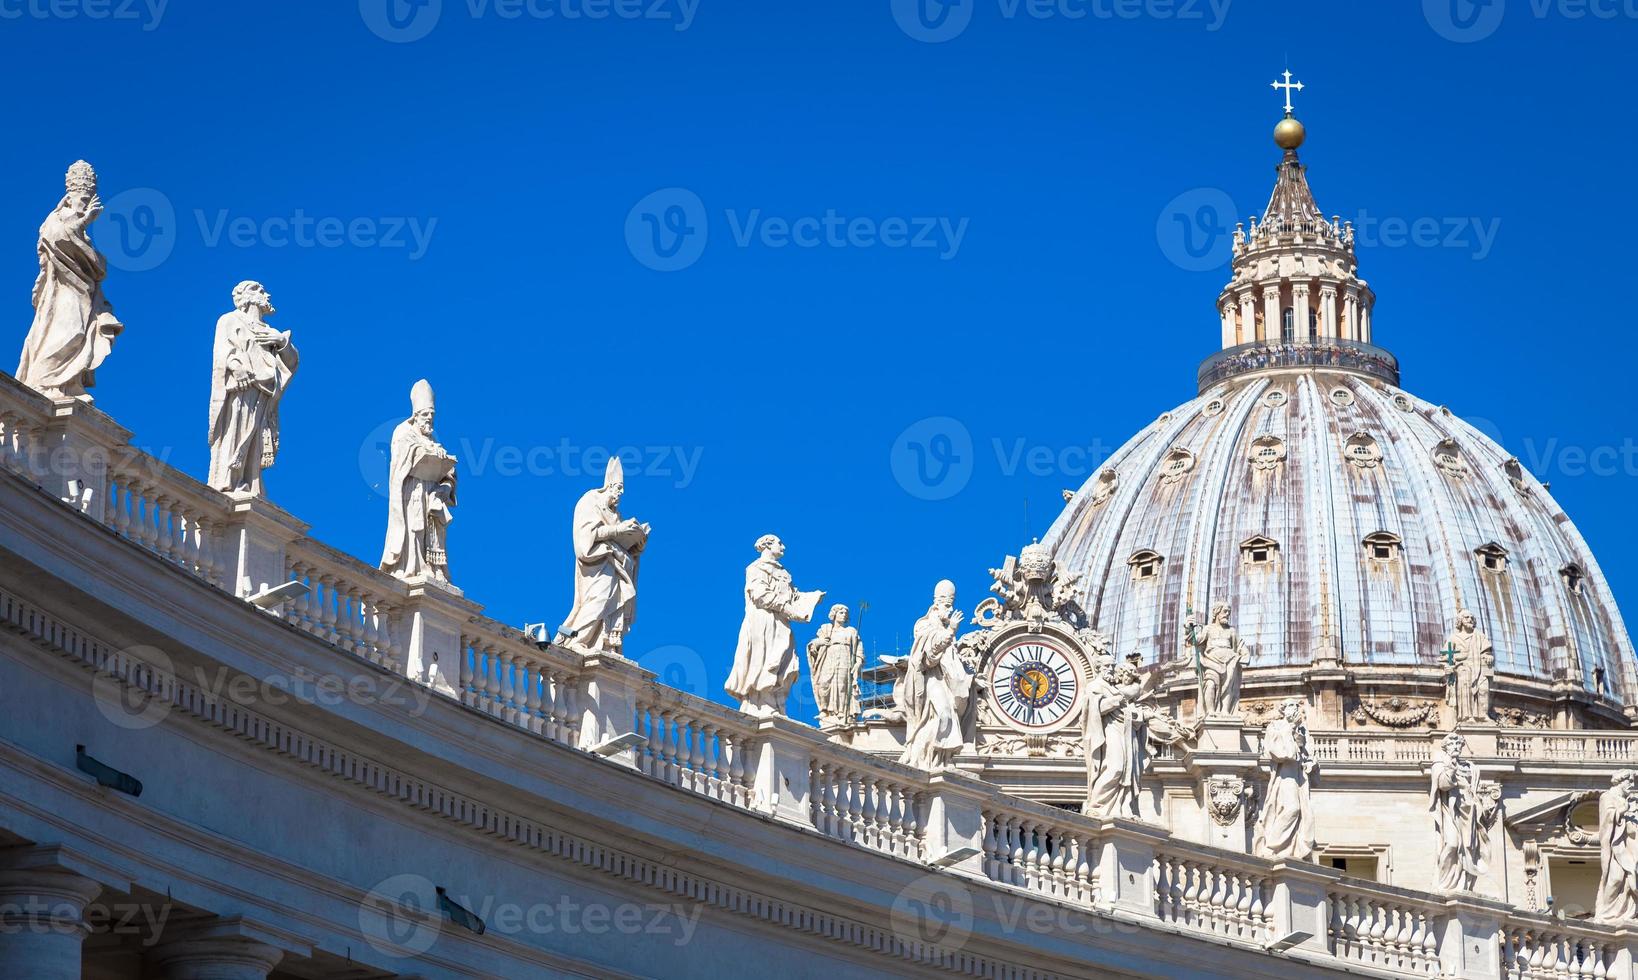 Decoración de estatuas en la catedral de San Pedro con la cúpula de fondo - Roma, Italia foto